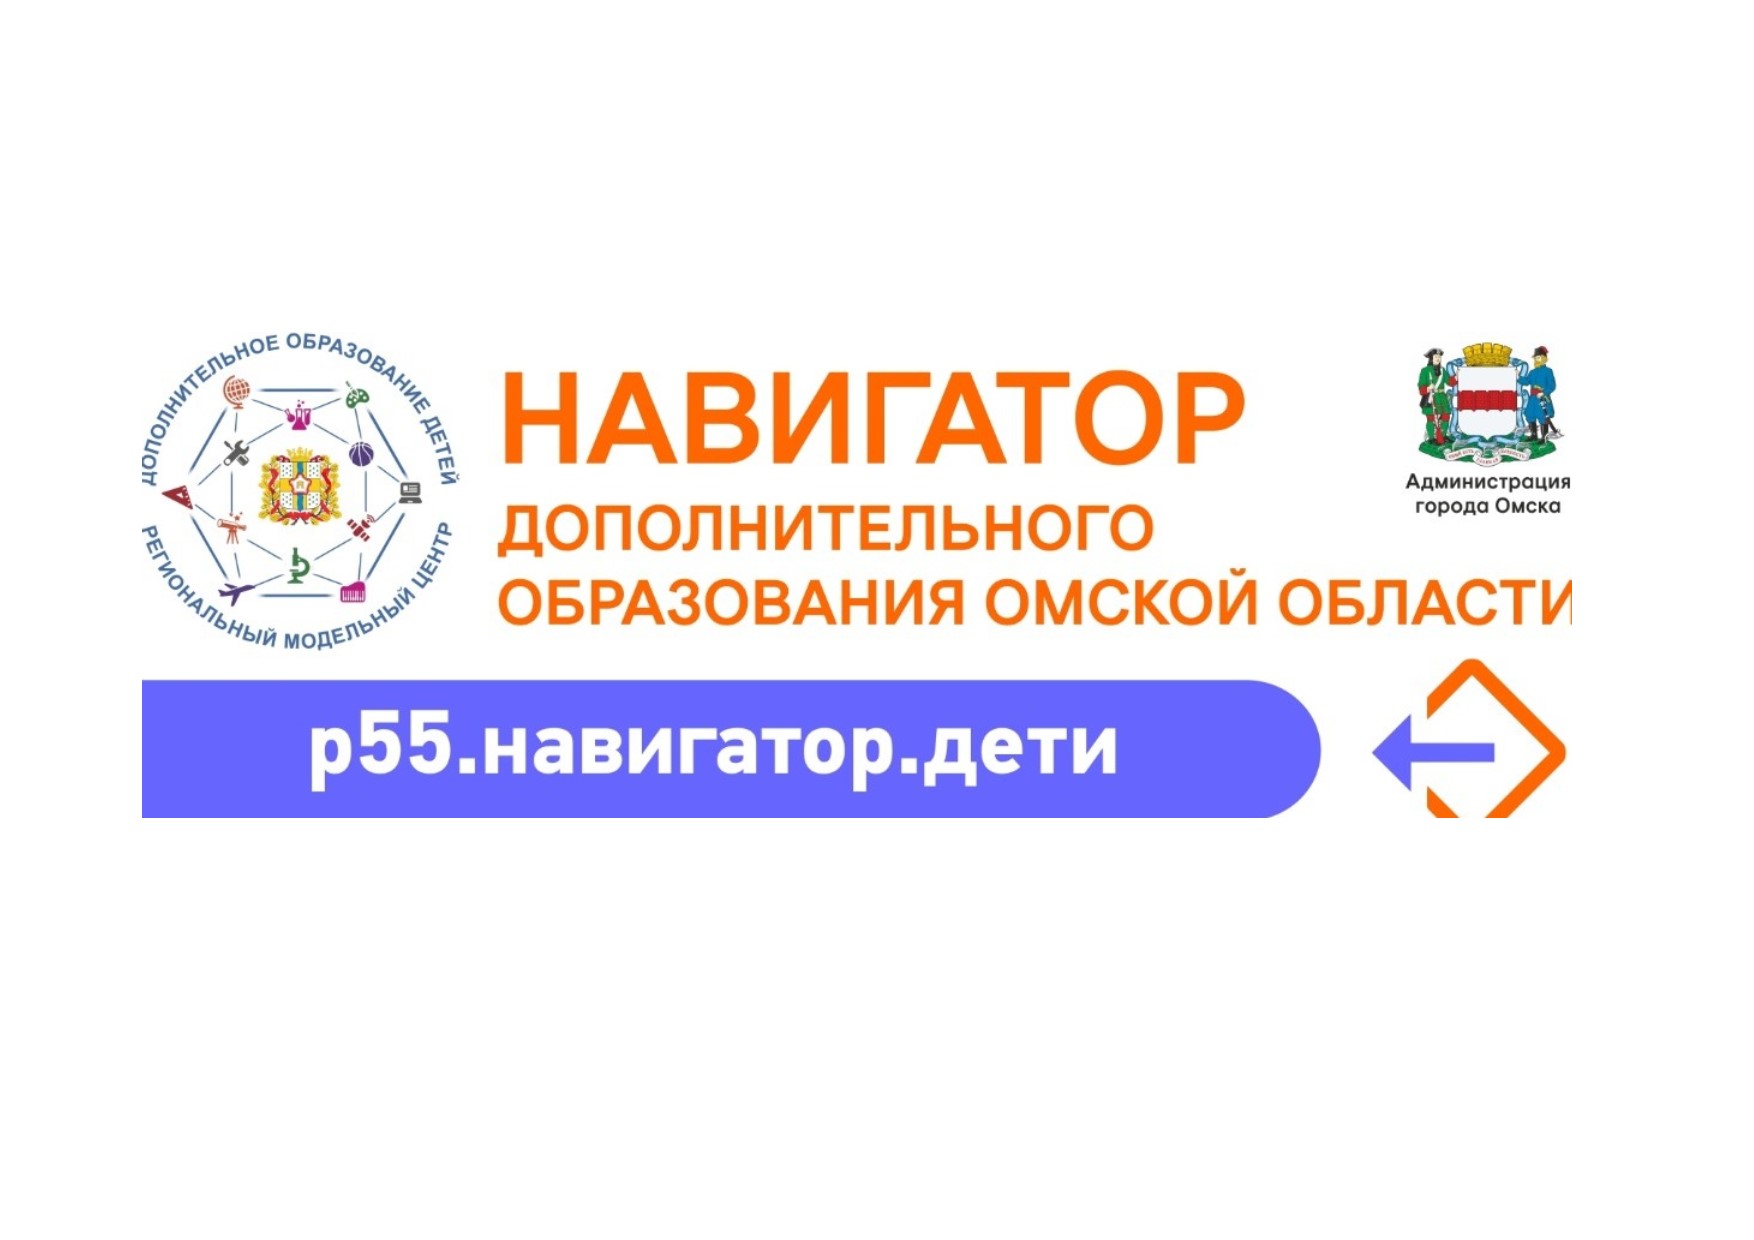 Навигатор образование омской области